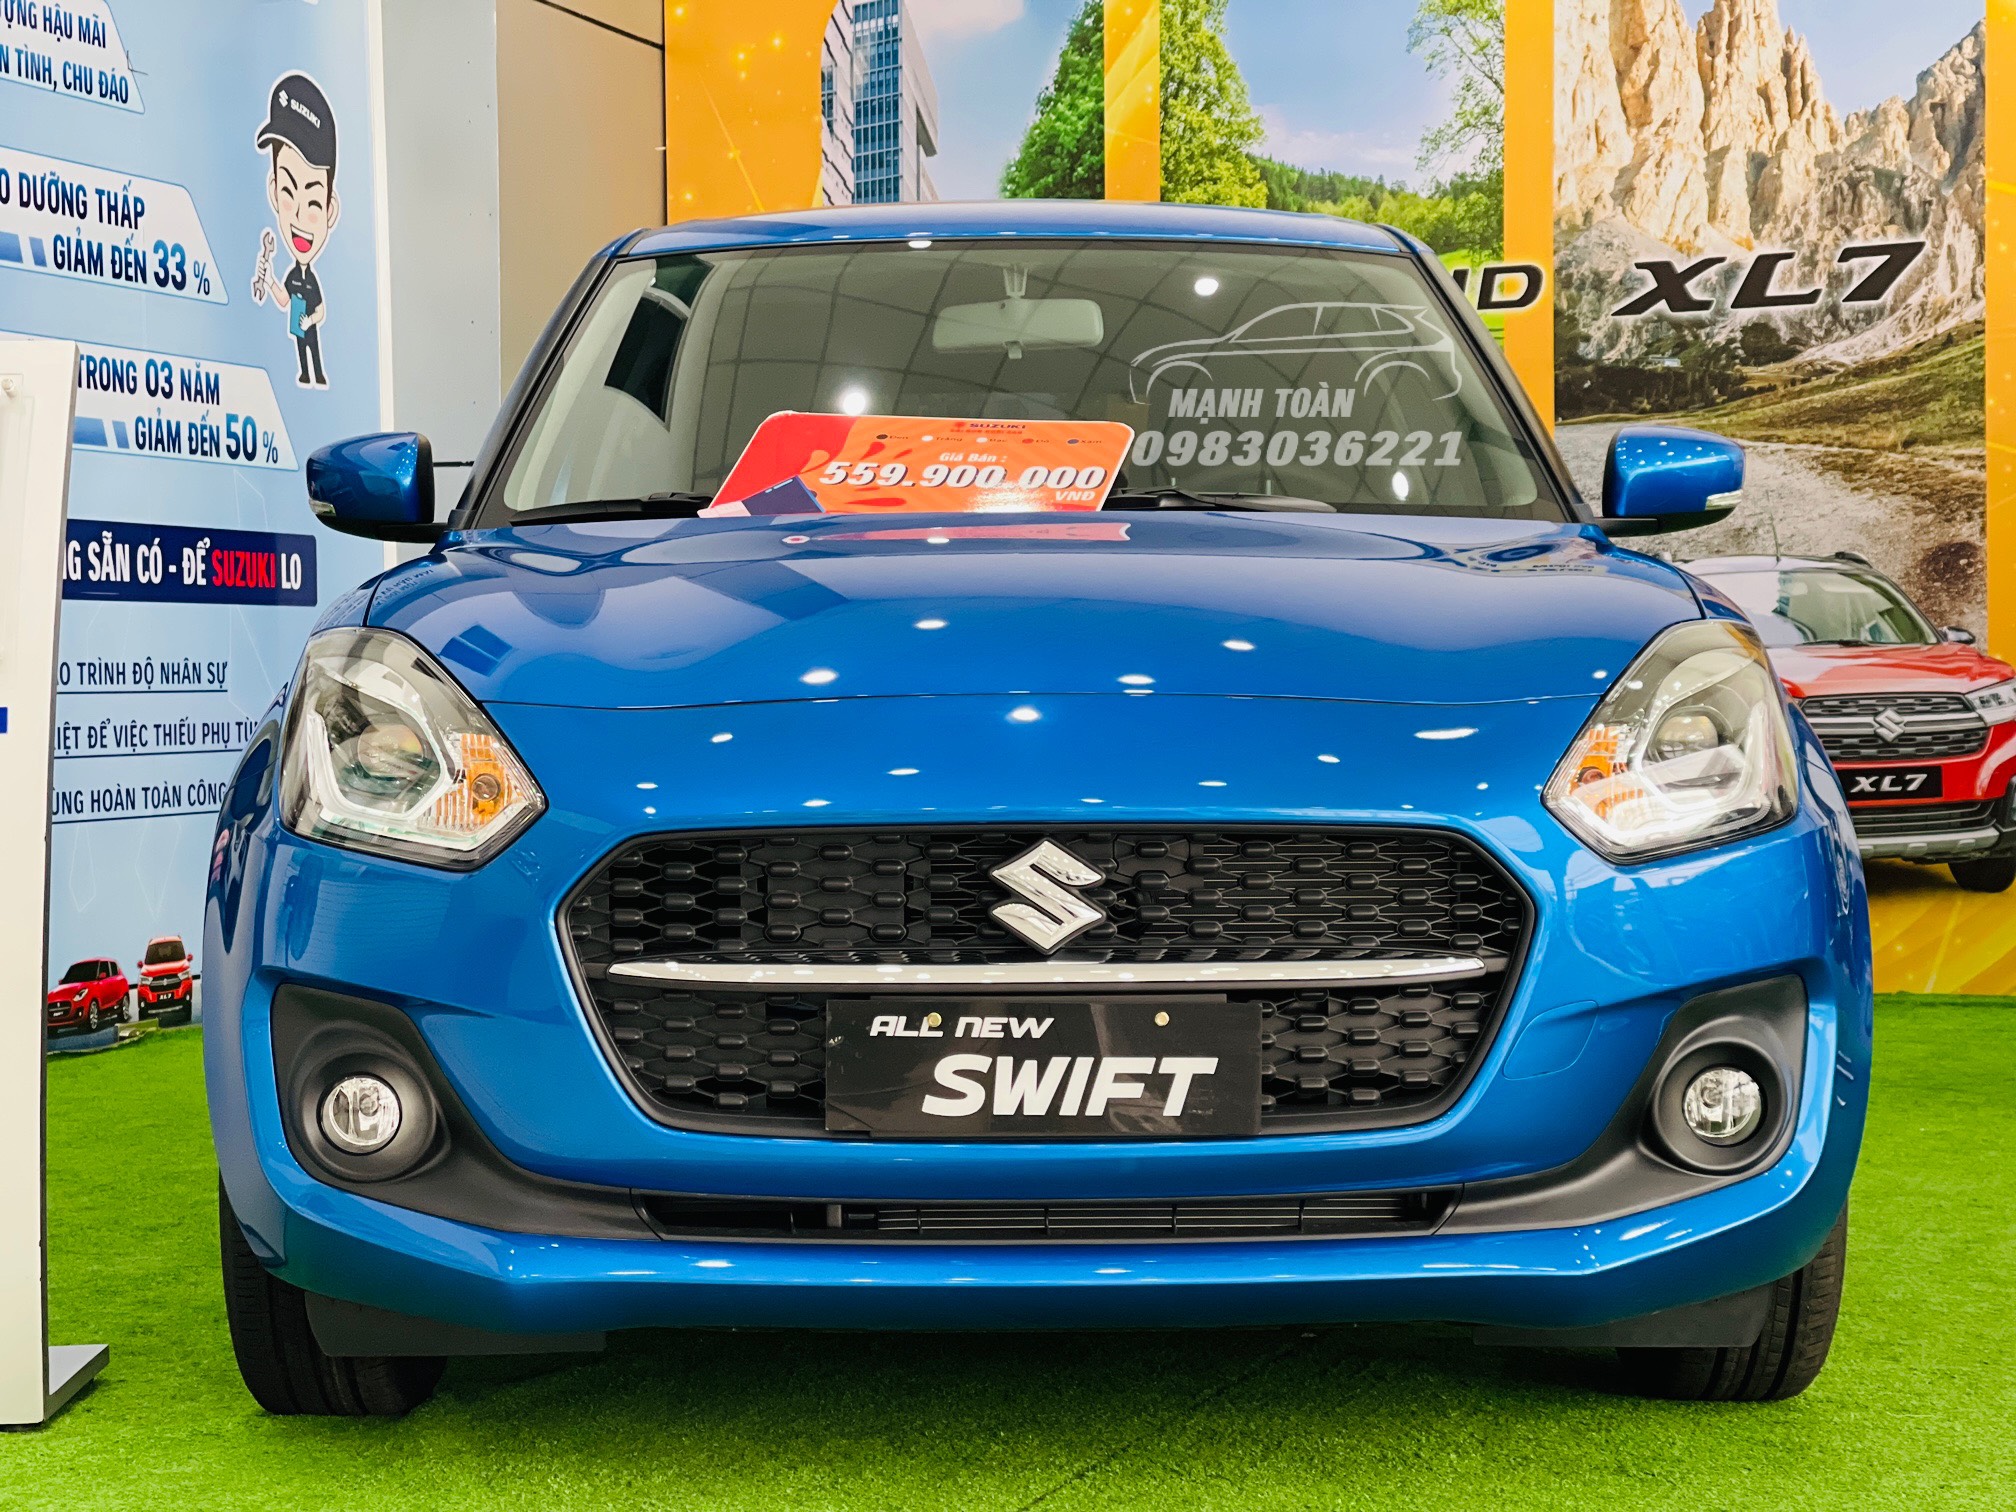 Nhìn trực diện, đầu xe Suzuki Swift 2023 thu hút bởi lưới tản nhiệt hình lục giác mở rộng